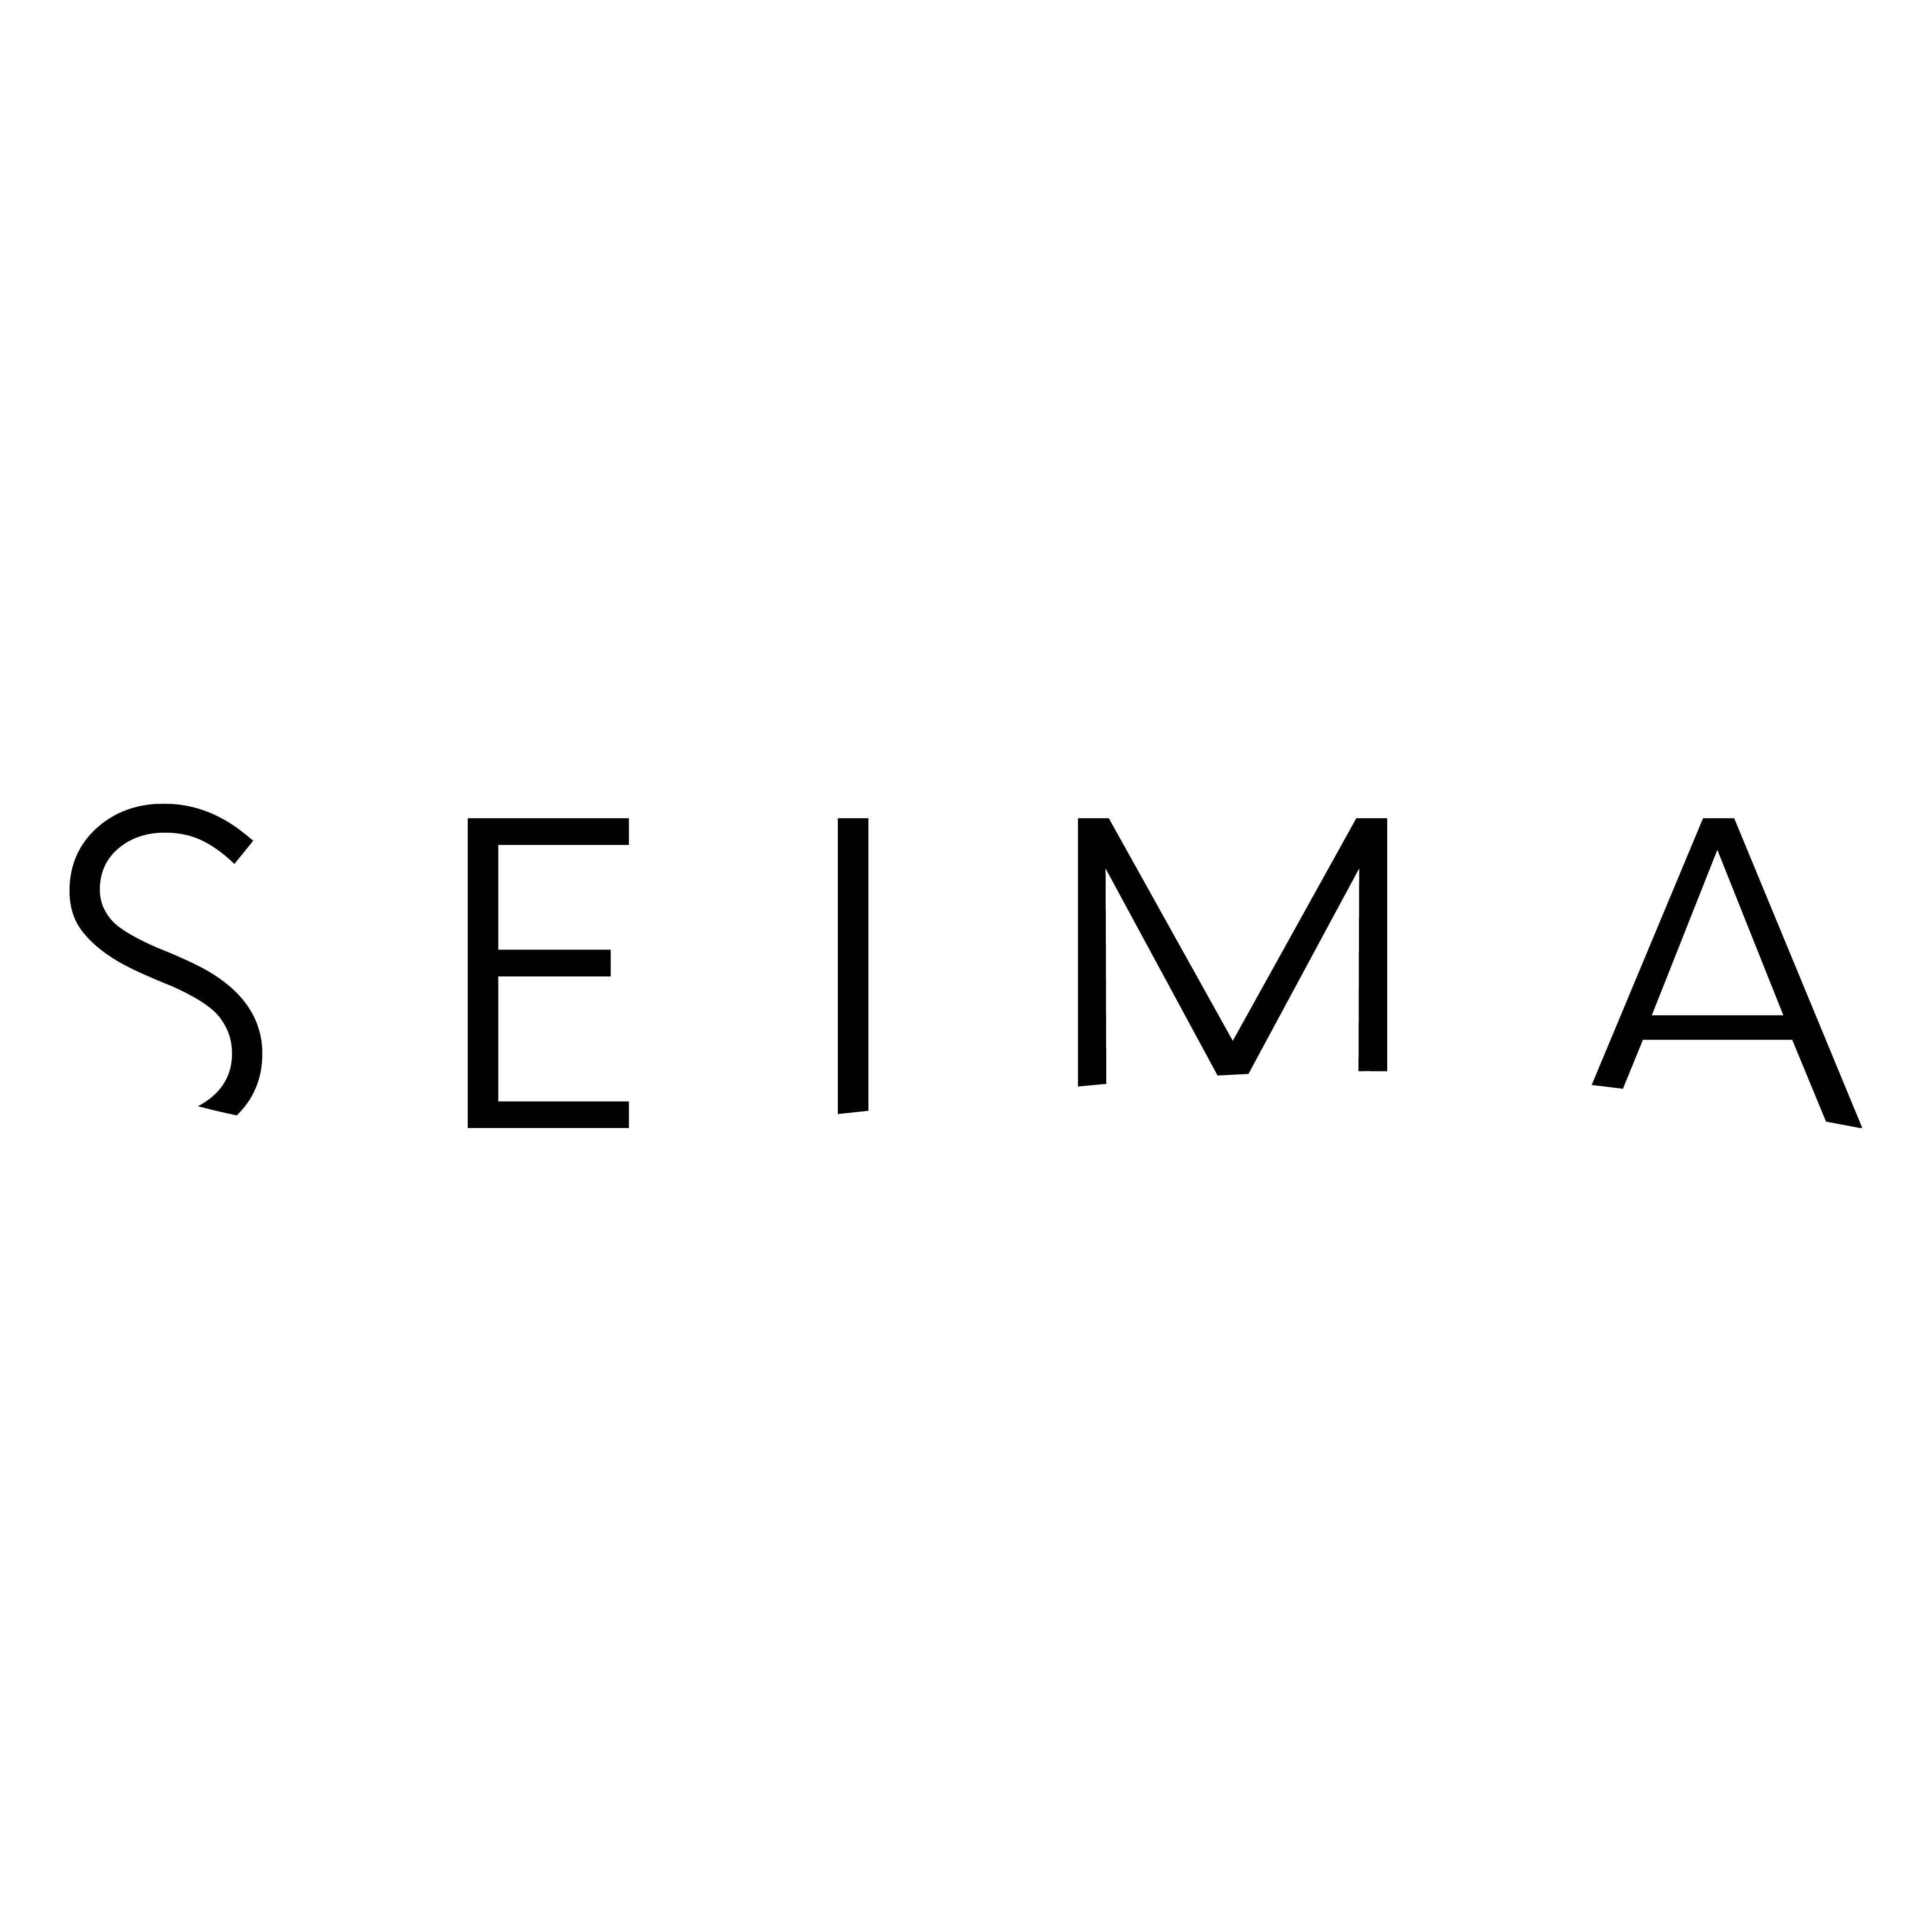 Seima